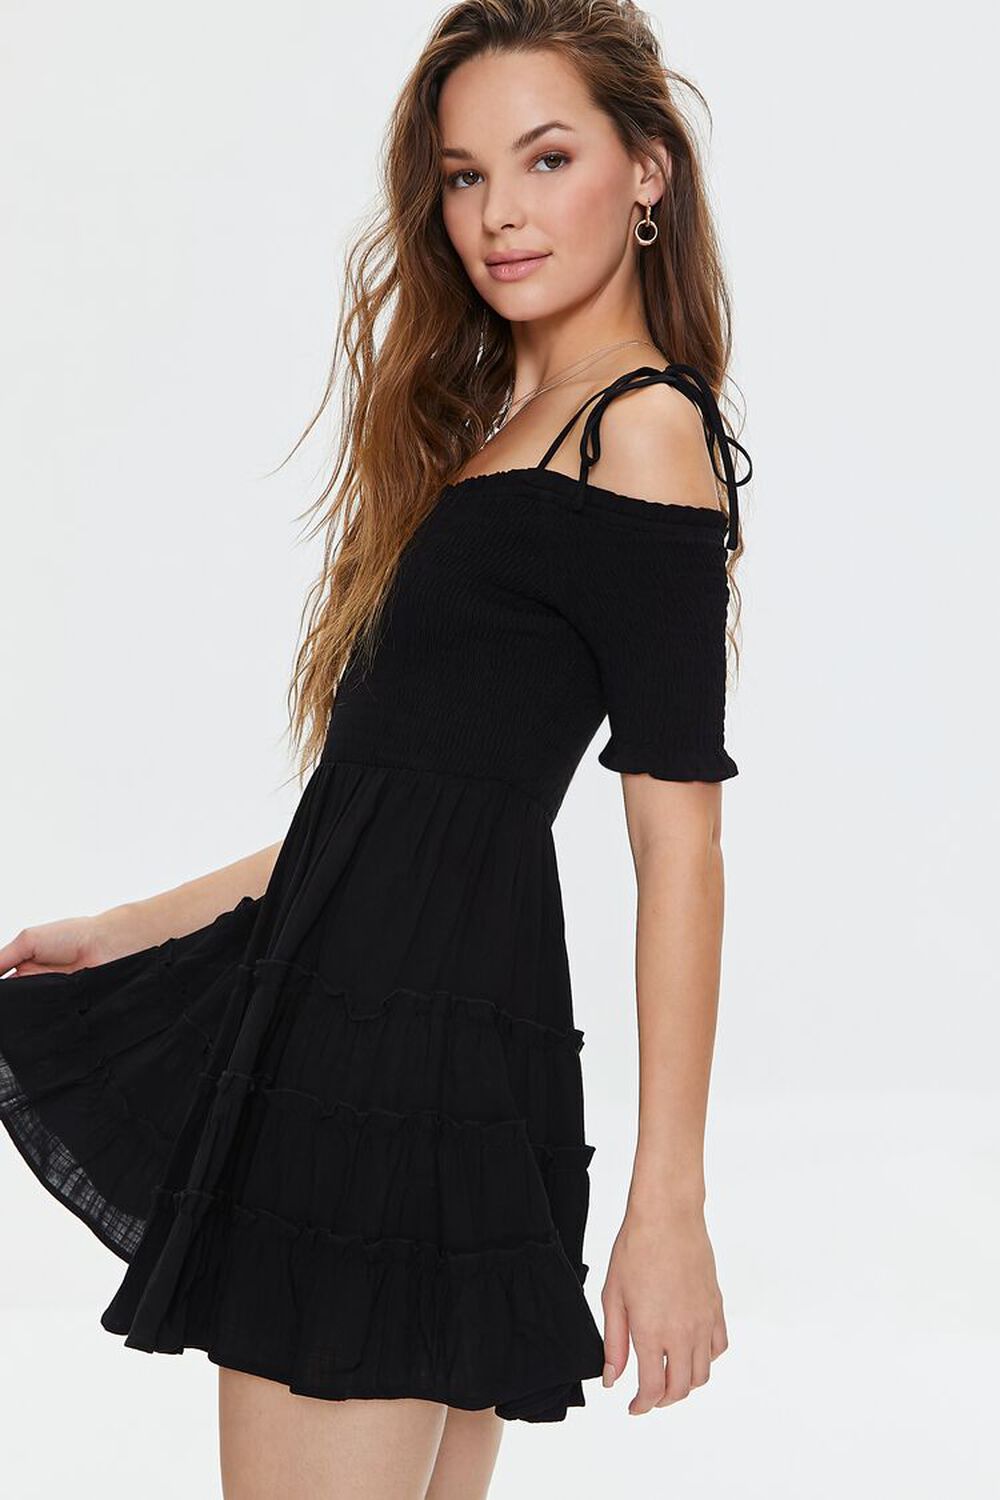 BLACK Smocked Open-Shoulder Mini Dress, image 2